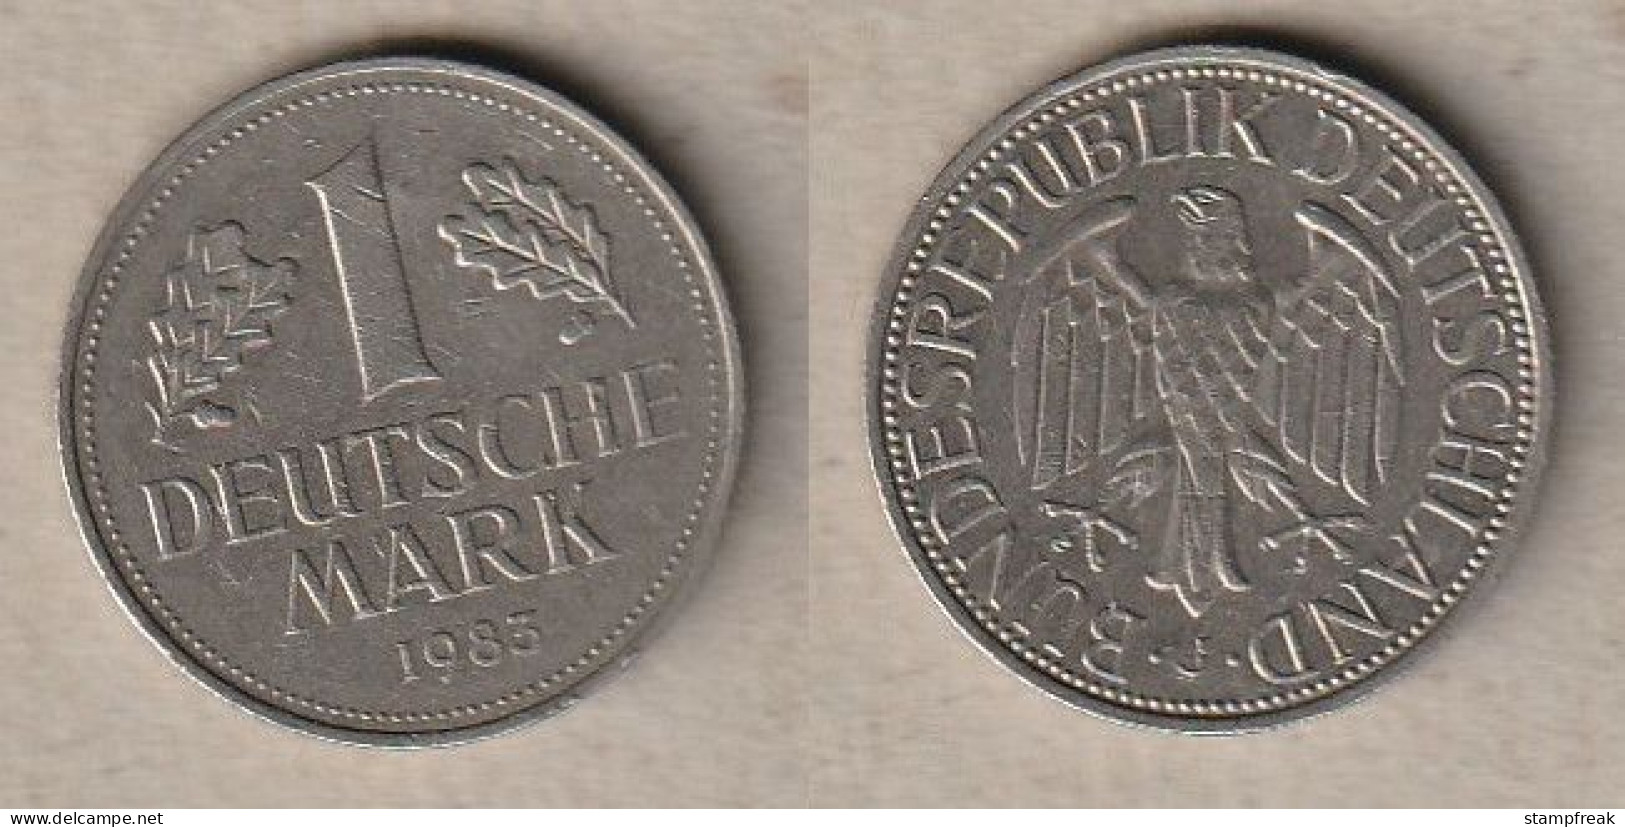 01909) Deutschland, 1 Mark 1983 J - 1 Mark